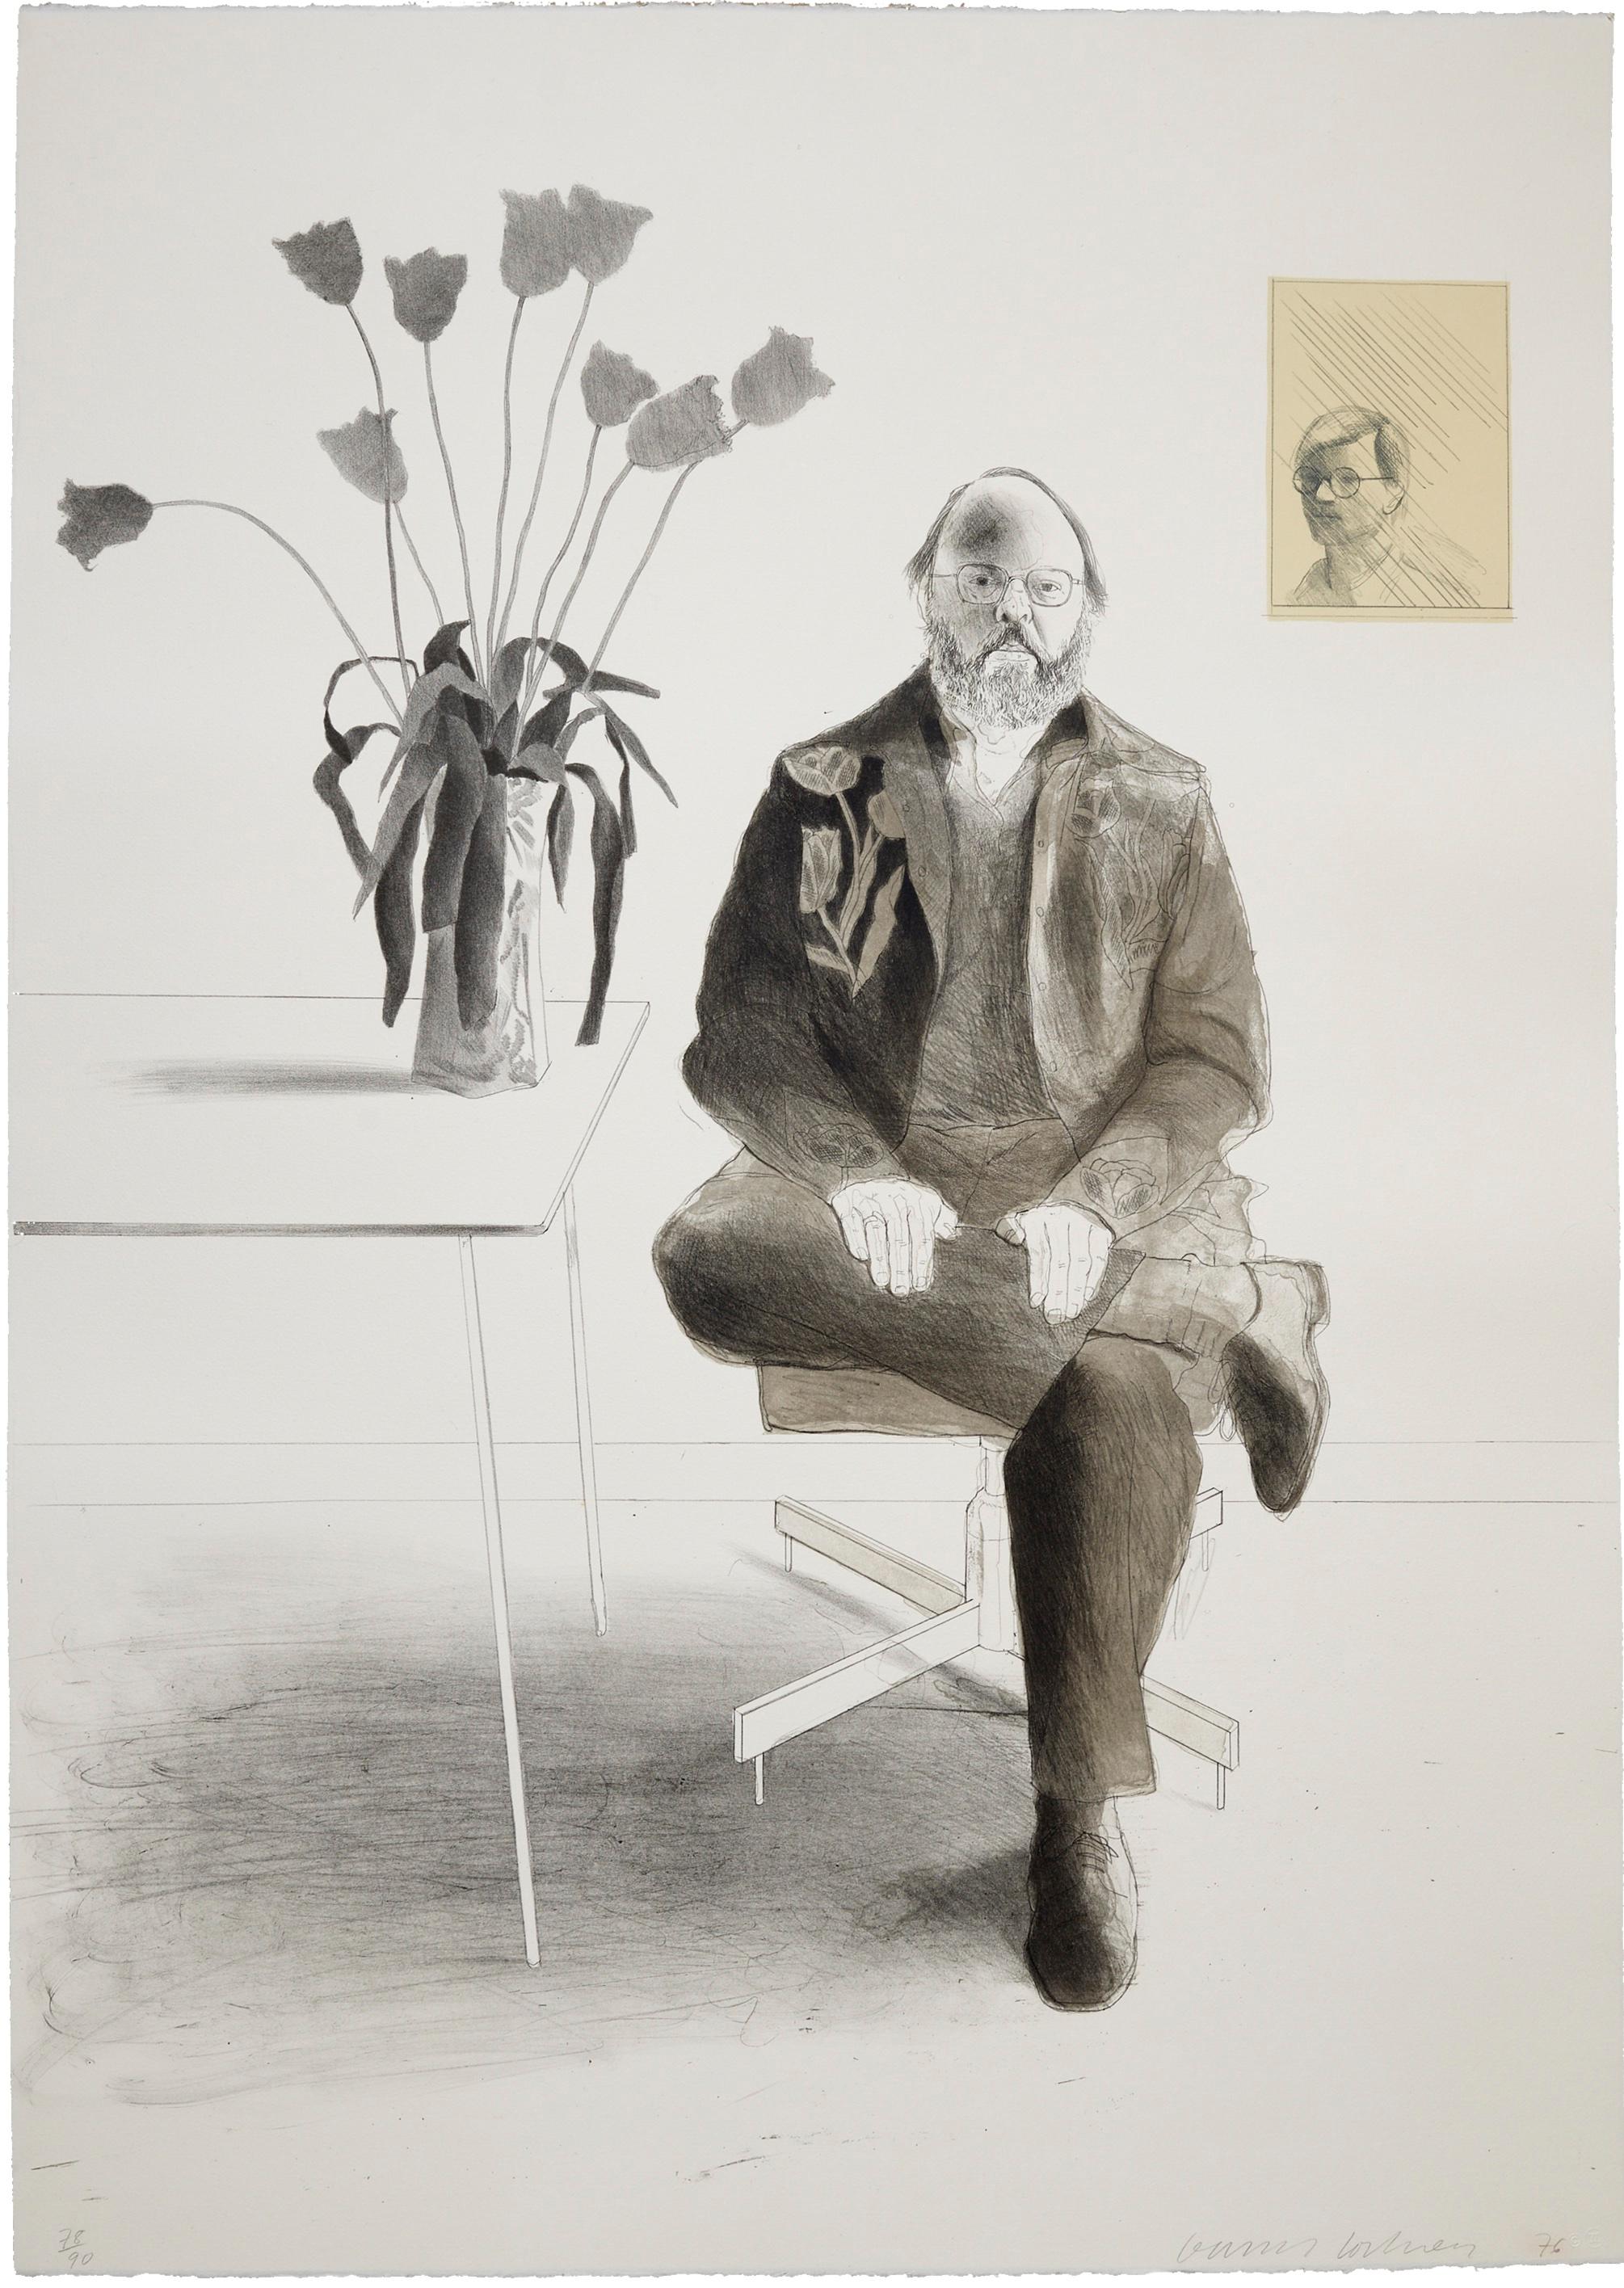 Henry assis avec des tulipes, 1976 
David Hockney

Lithographie imprimée en couleurs, sur vélin chamois moulé d'Arches
Signé, daté et numéroté au crayon dans l'édition de 90 exemplaires.
De la part des amis
Imprimé par Gemini, A.E.L.G., Los